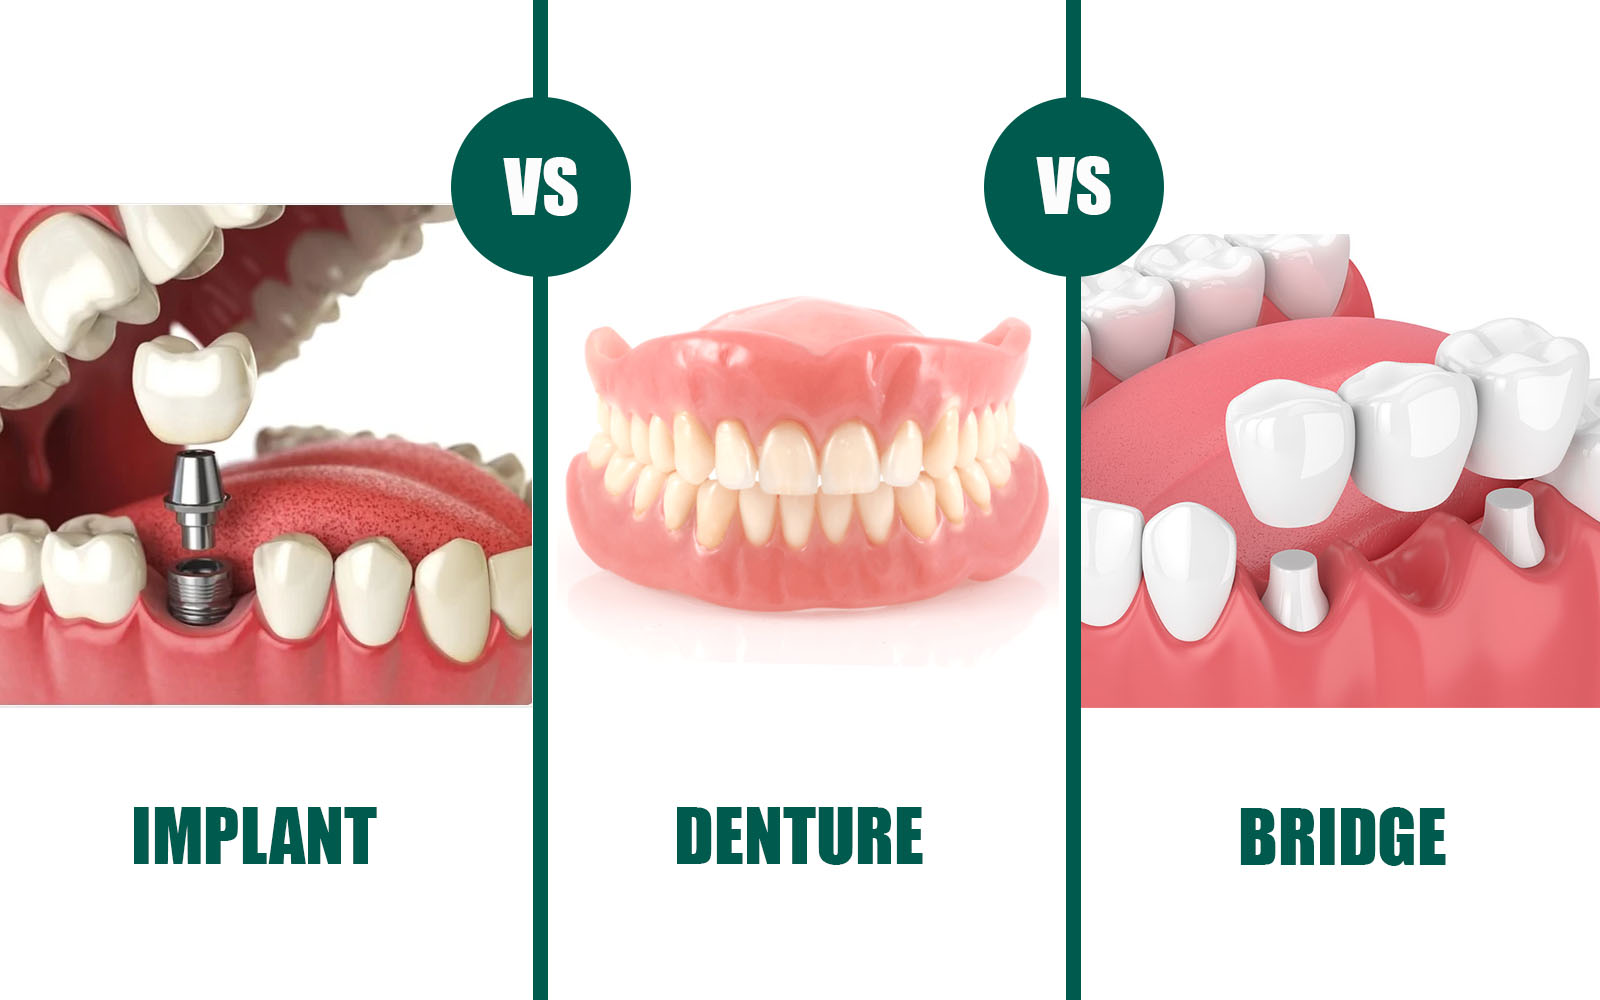 implant-vs-denture-vs-bridge.jpg